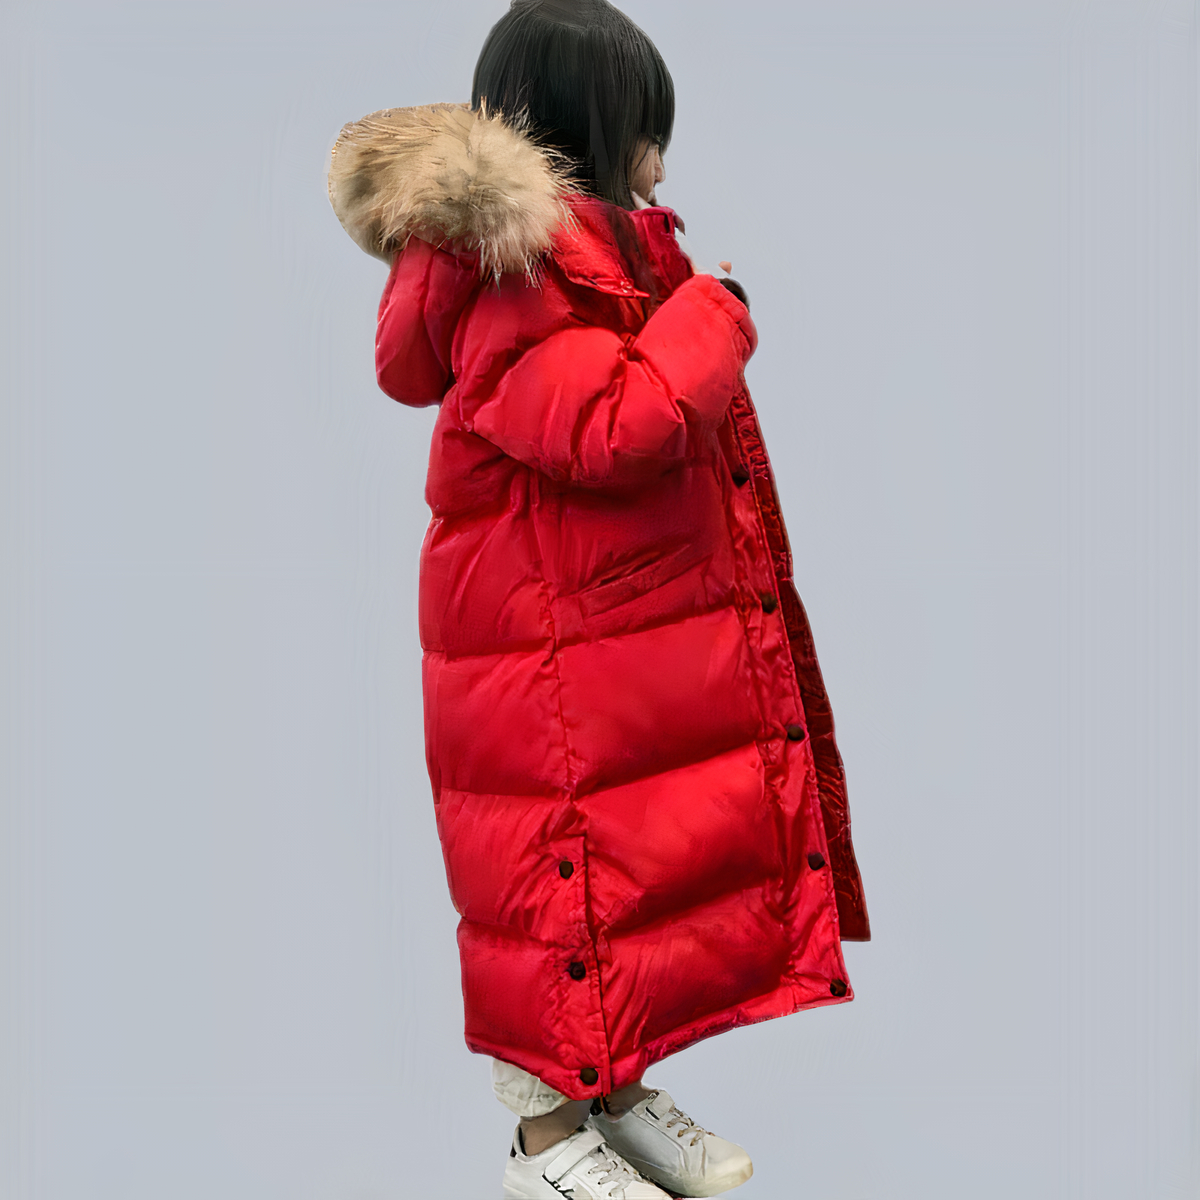 Petite fille portant une doudoune à capuche pour enfant rouge devant un fond gris.